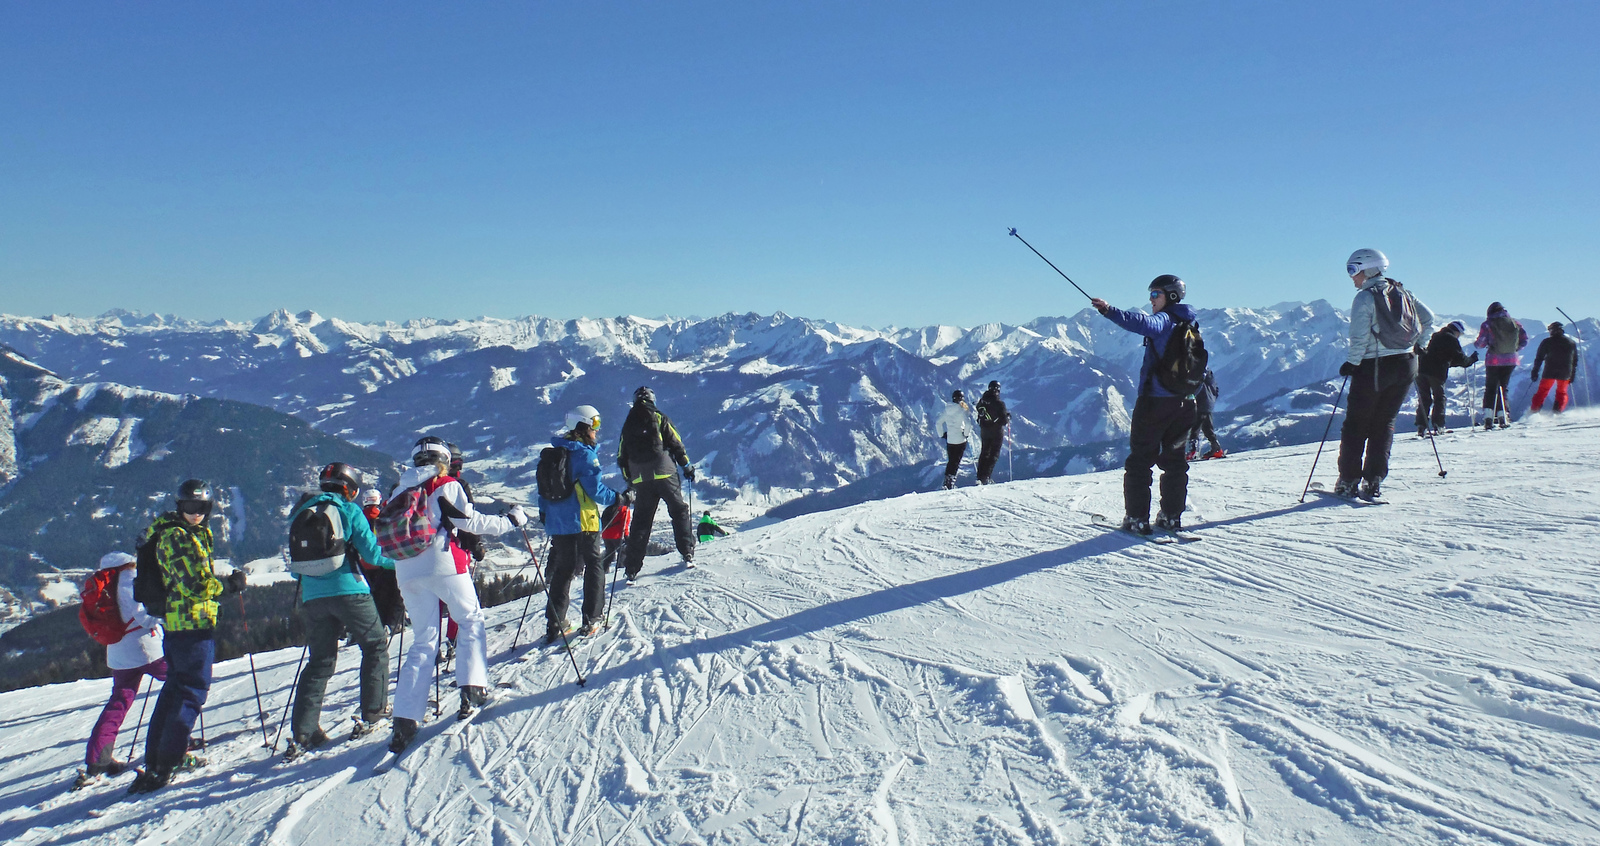 pgl school ski trips